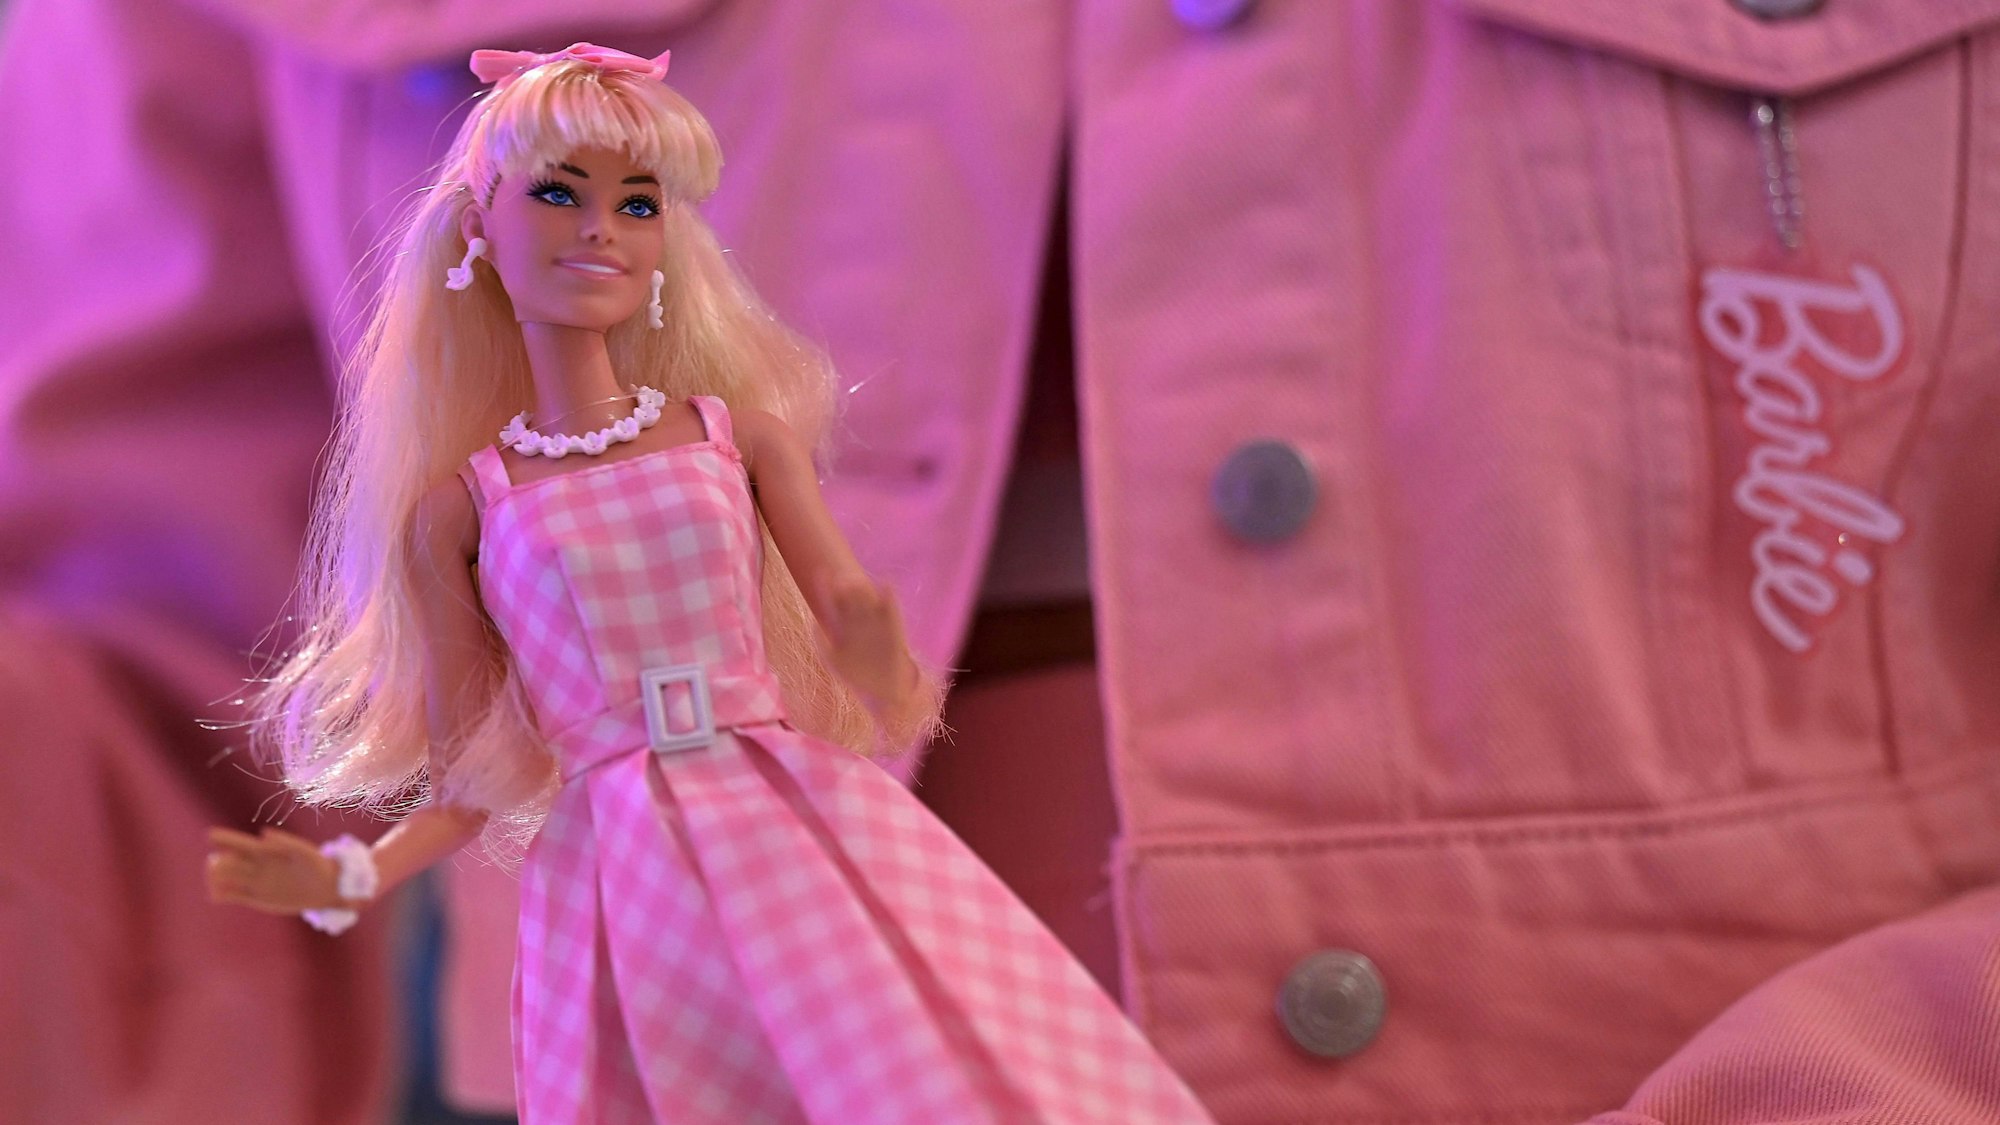 Barbie-Puppe vor einer rosa Jeansjacke mit Barbie-Logo